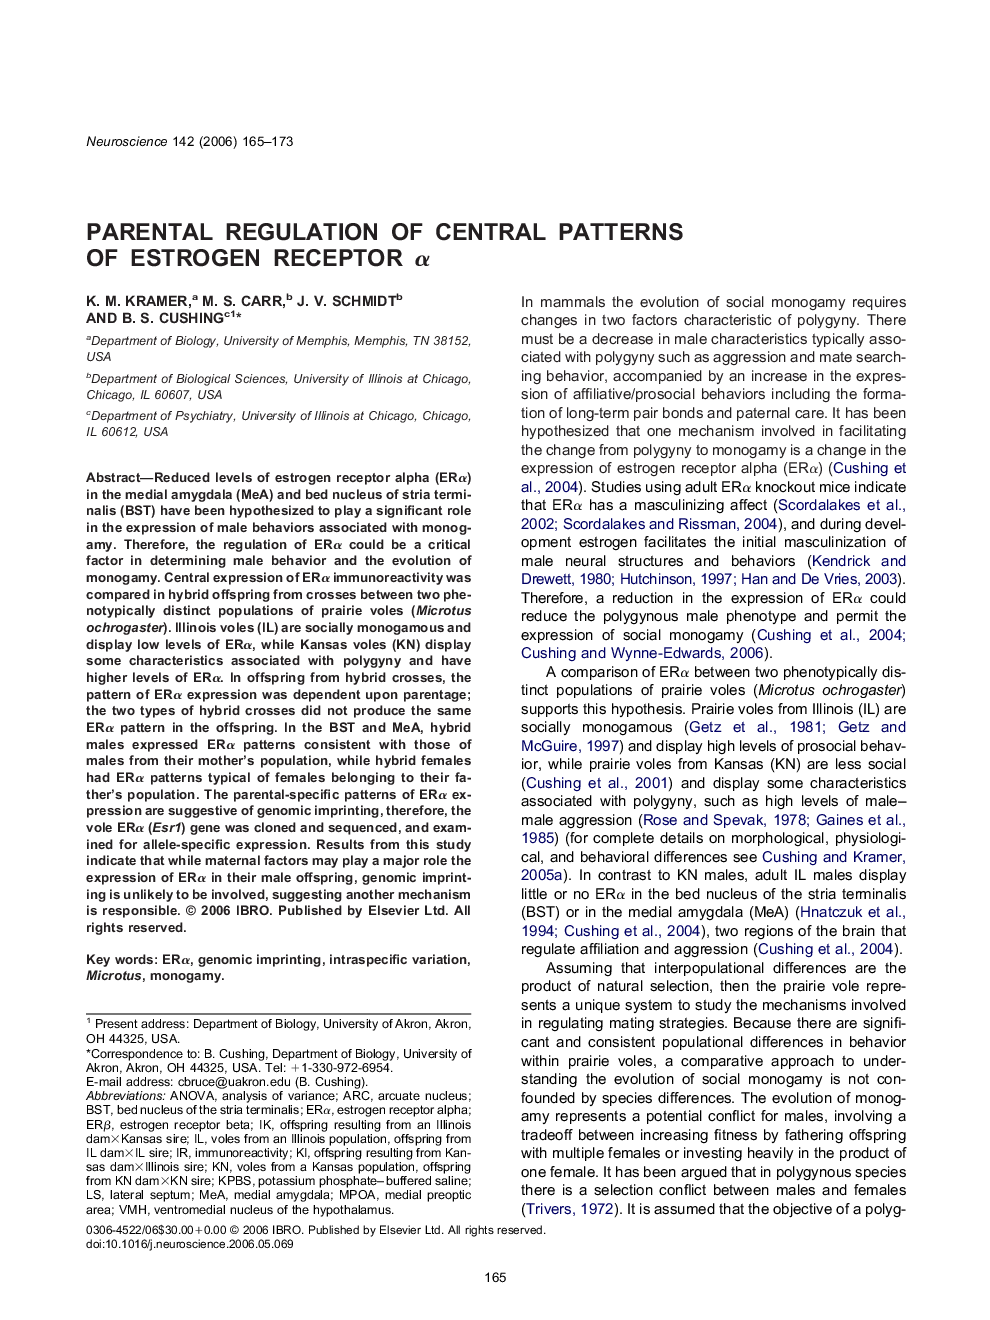 Parental regulation of central patterns of estrogen receptor α